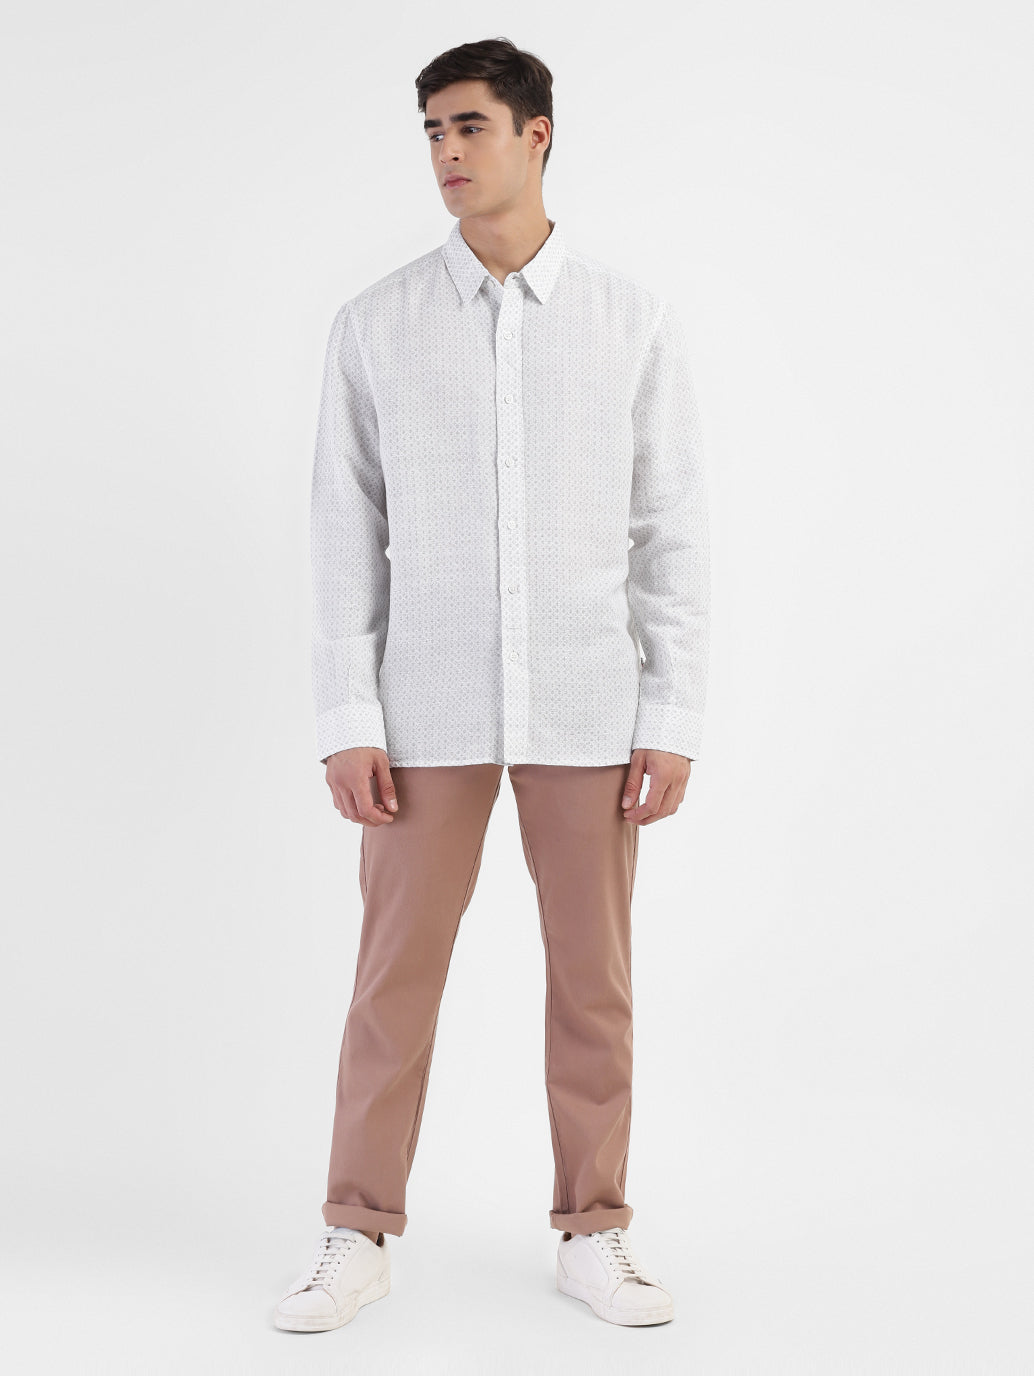 Men's Printed Spread Collar Linen Shirt